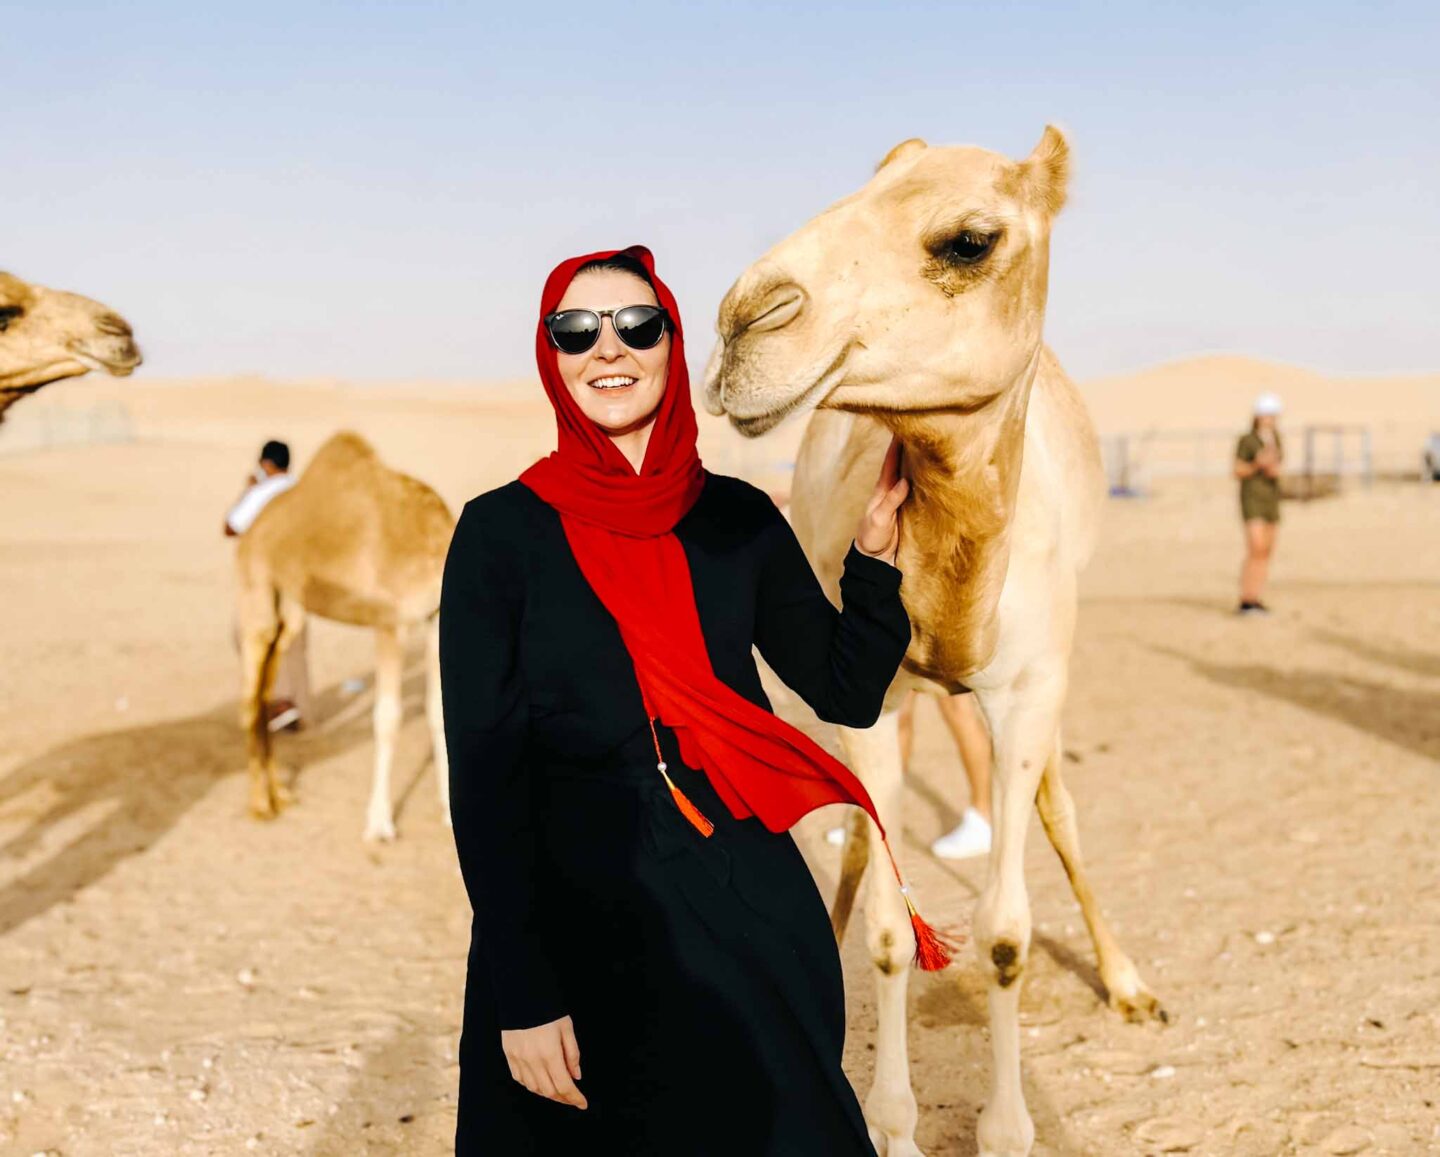 Things to do in Abu Dhabi, Abu Dhabi Desert Safari camel stop